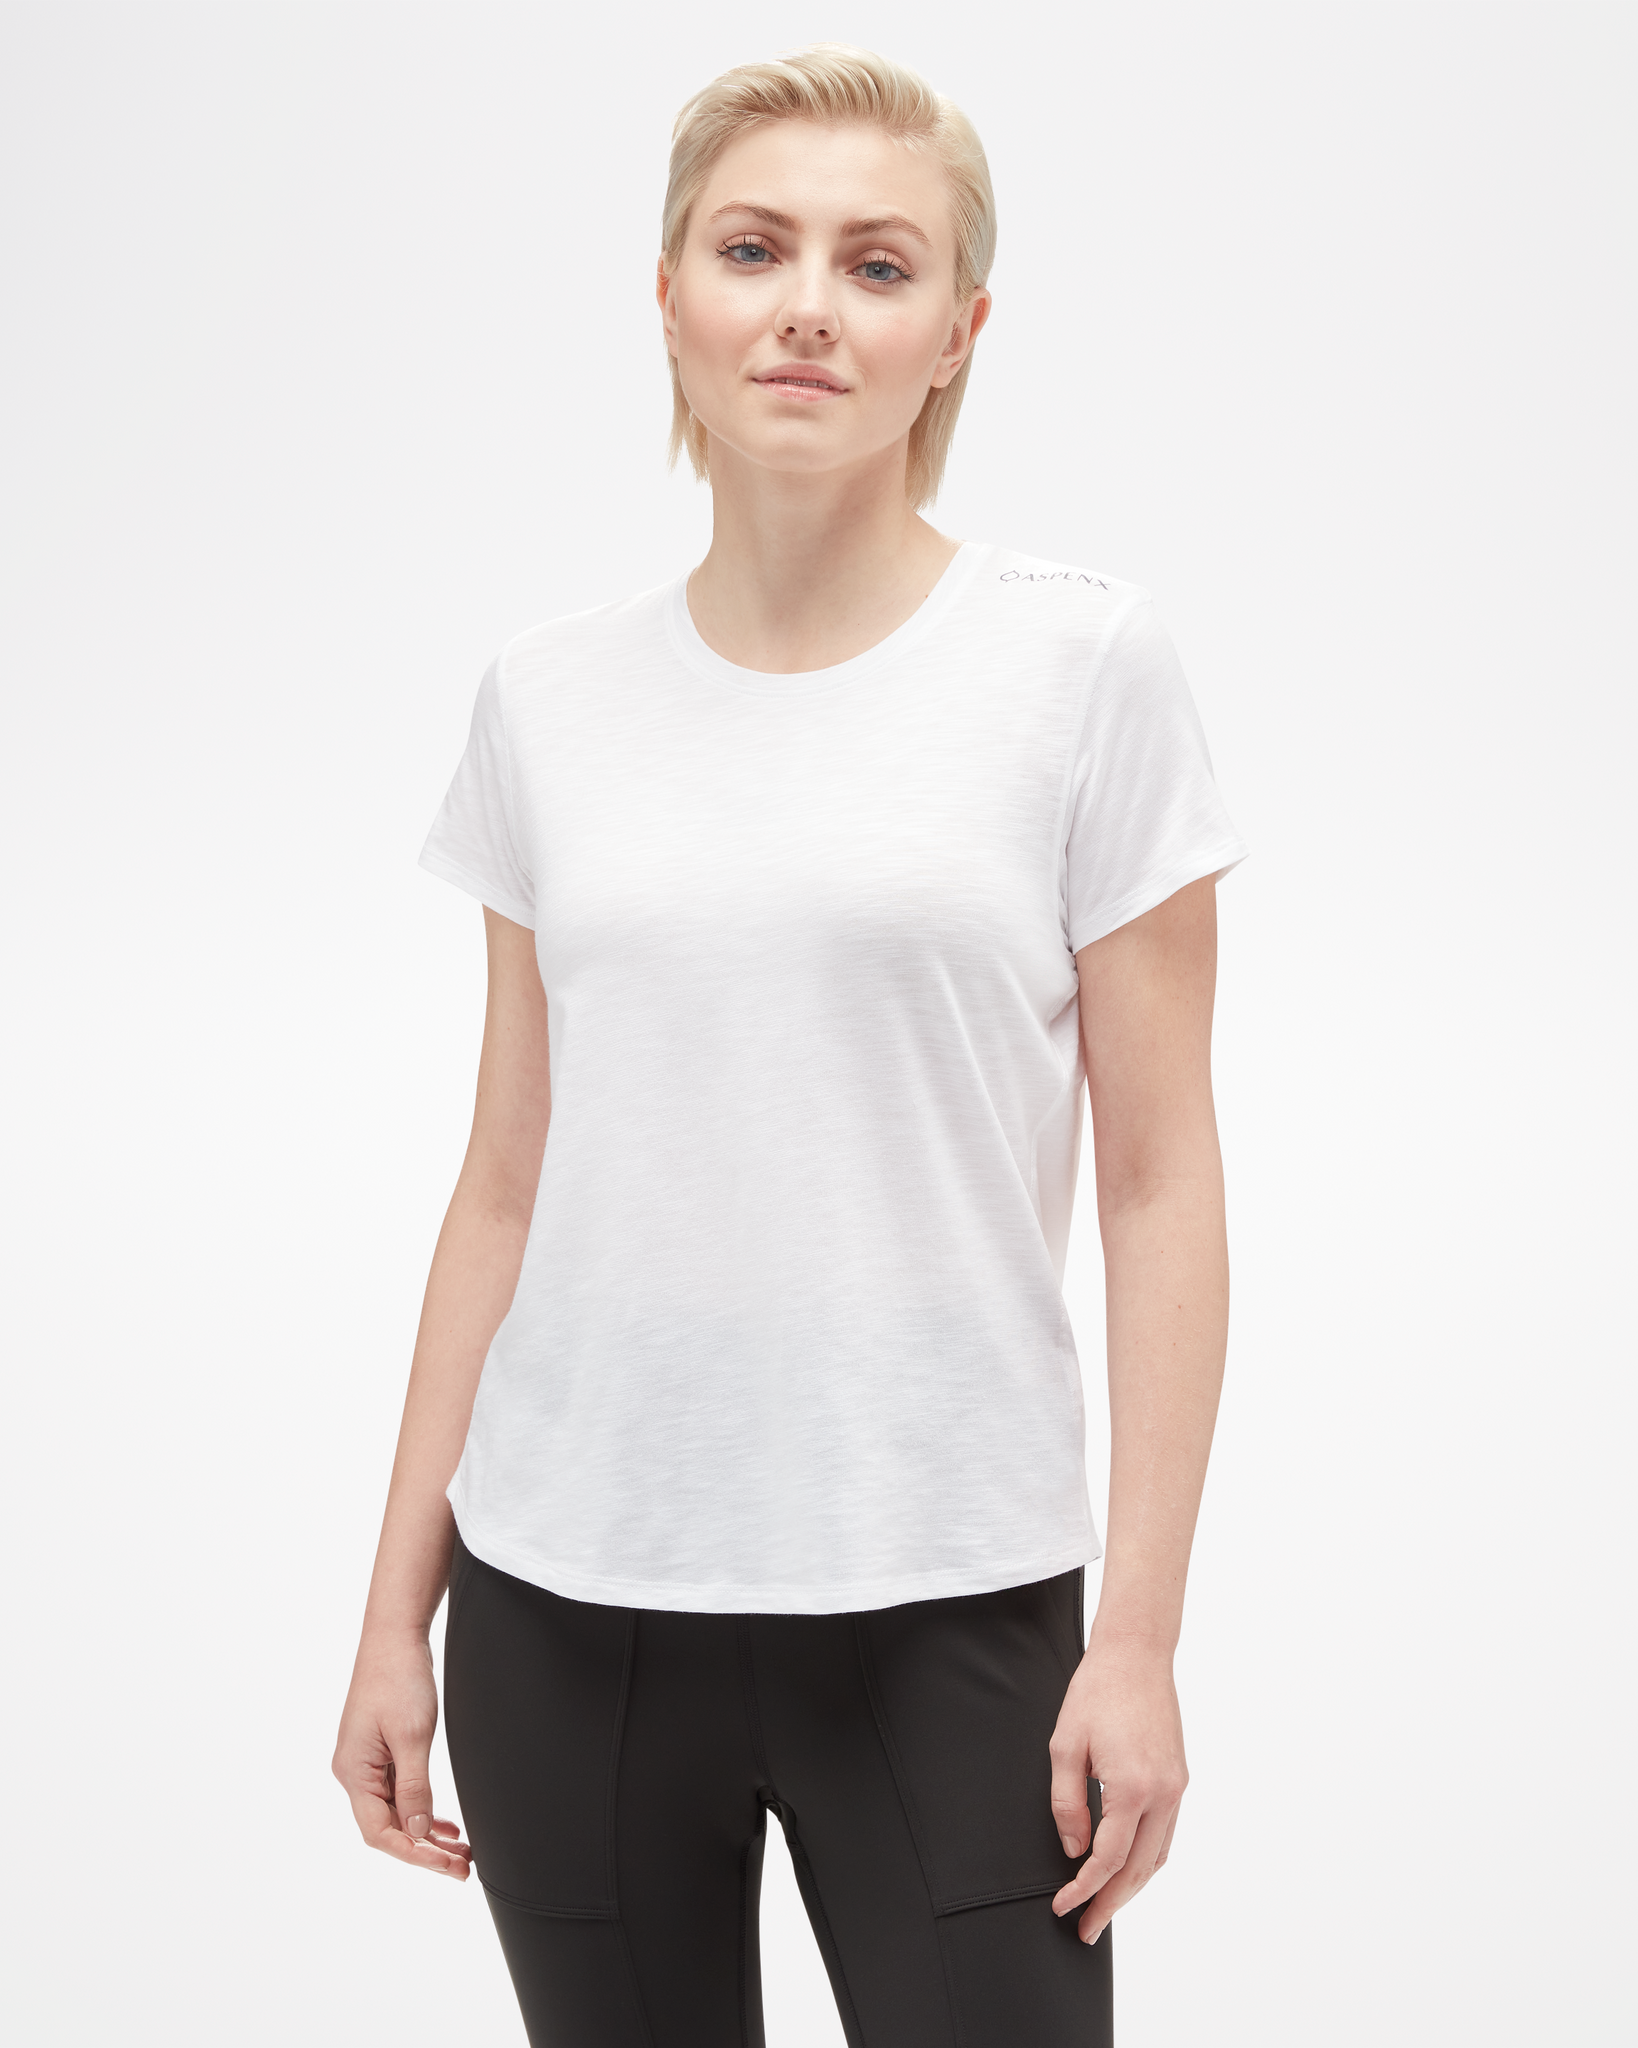 ASPENX Women’s Fitness T-Shirt